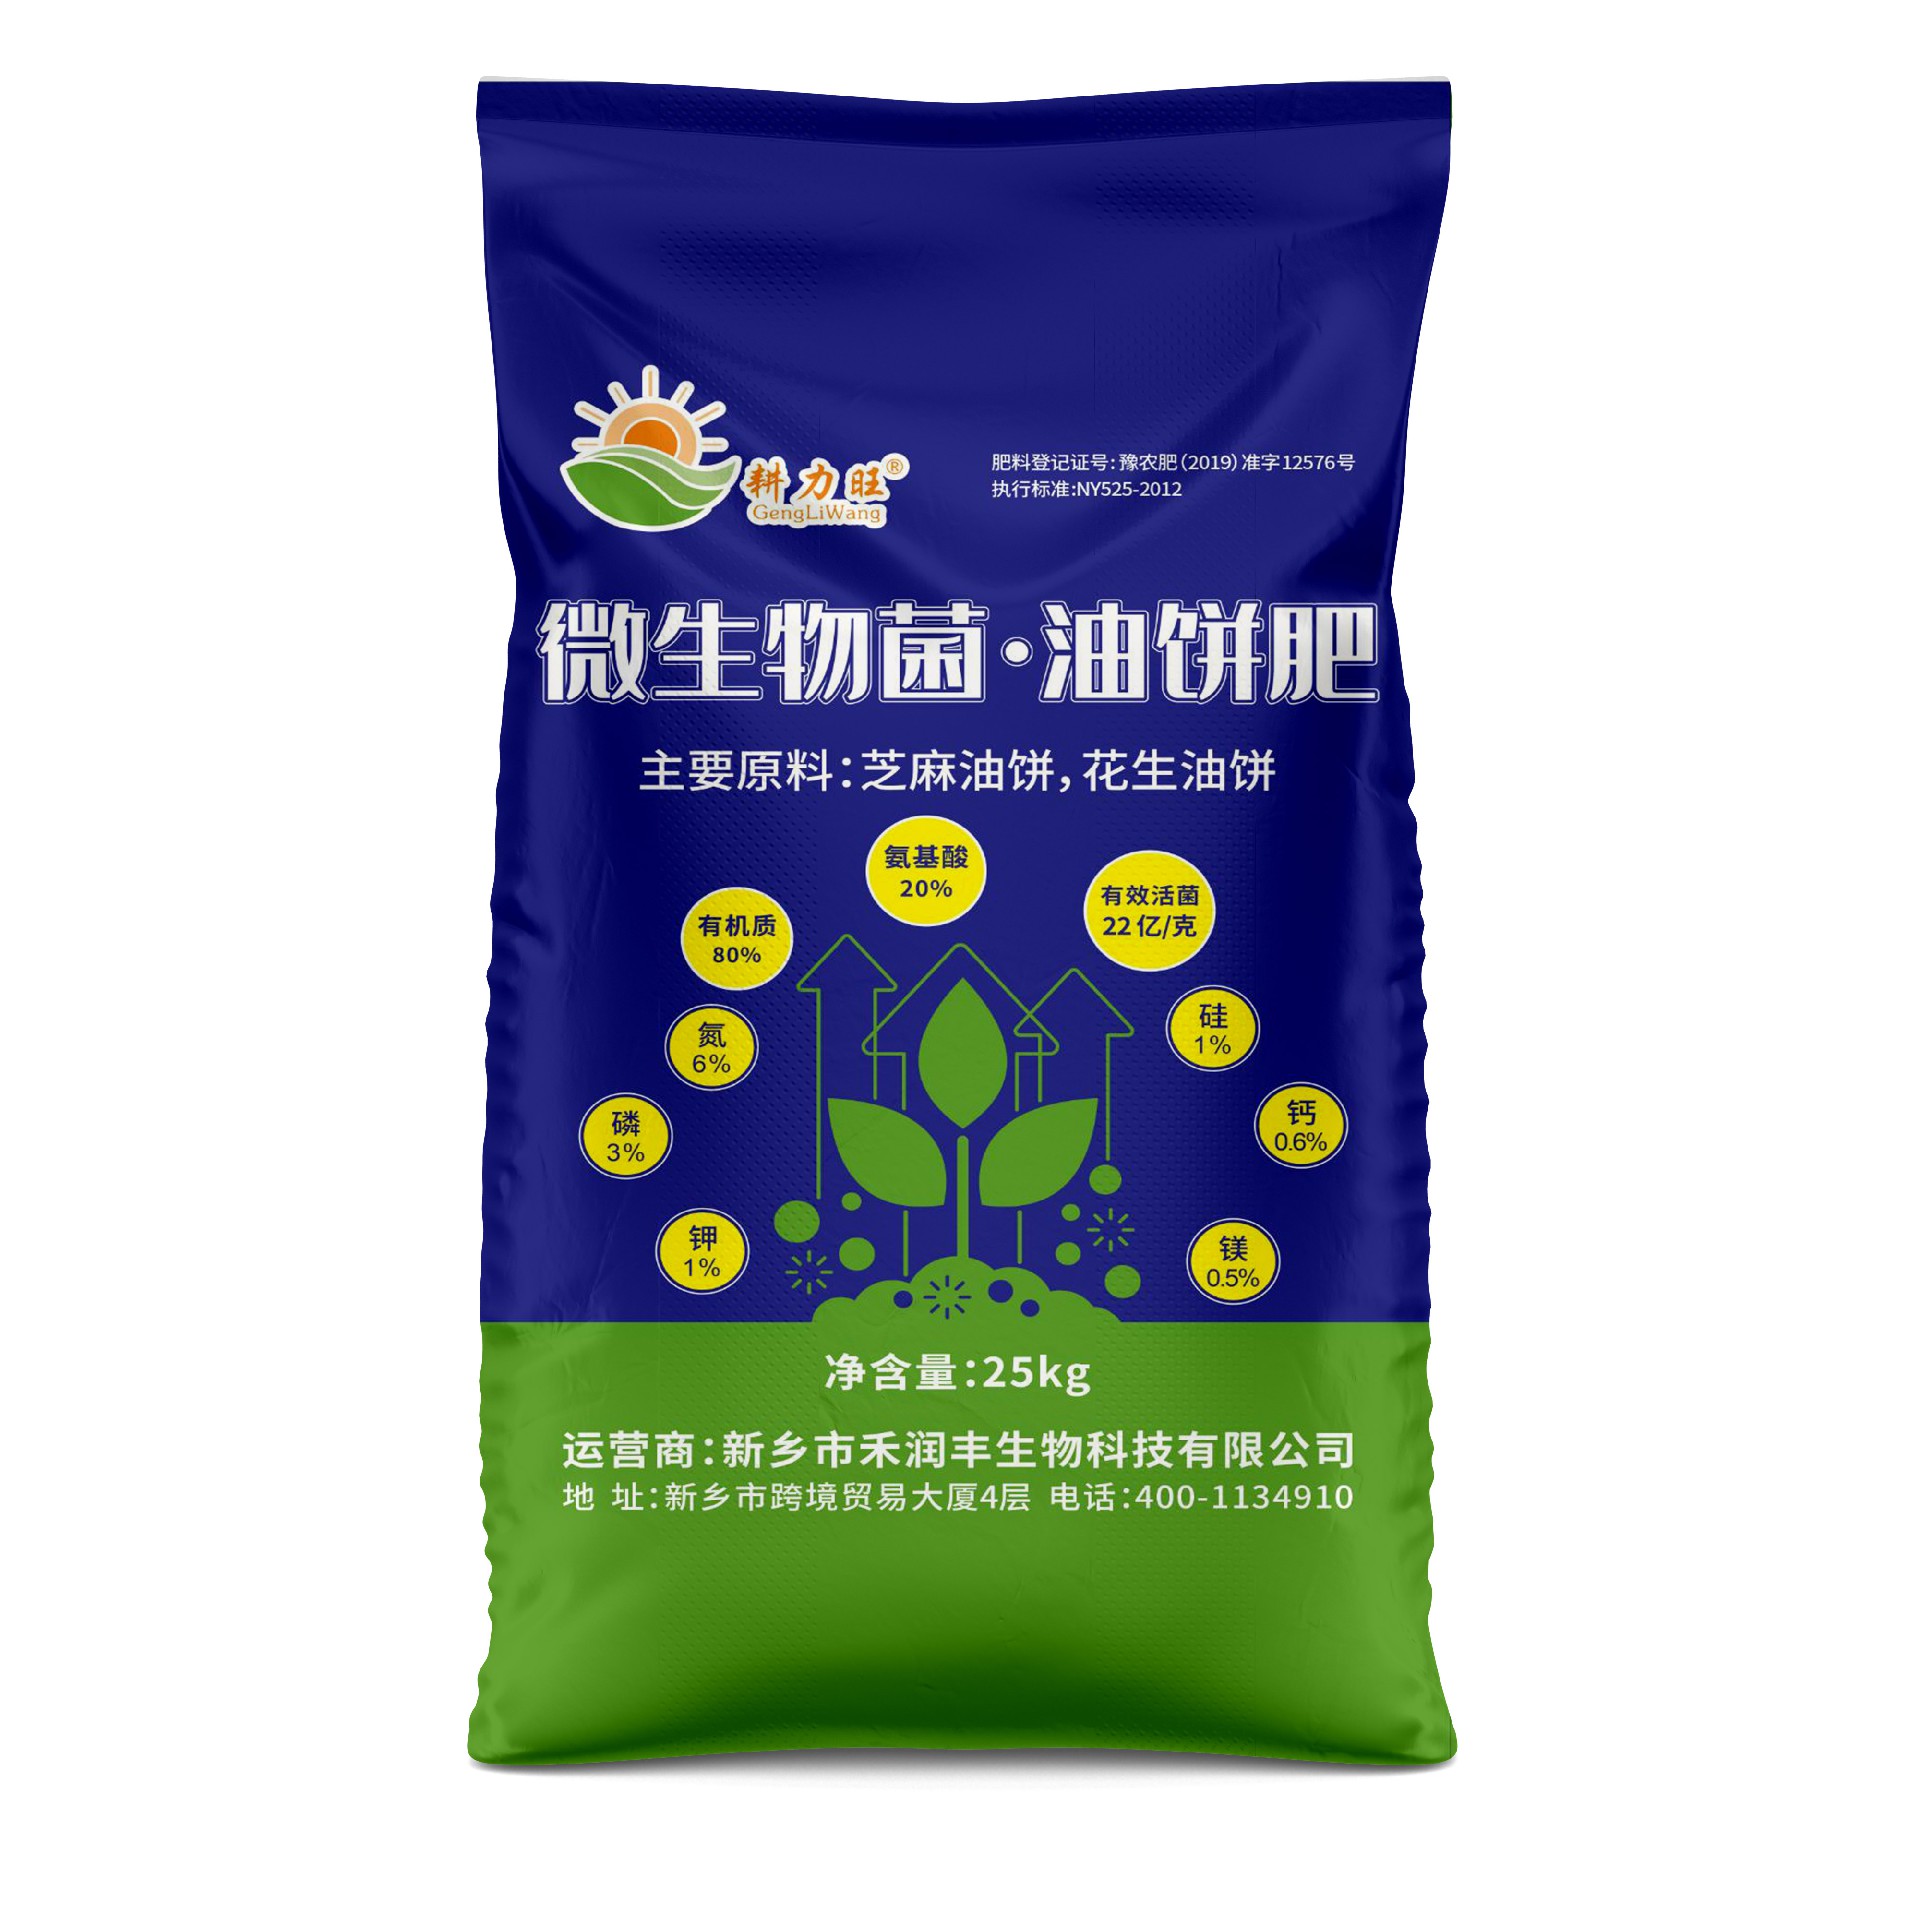 鄭州編織袋廠家分析購買肥料袋應注意五個因素有哪些？